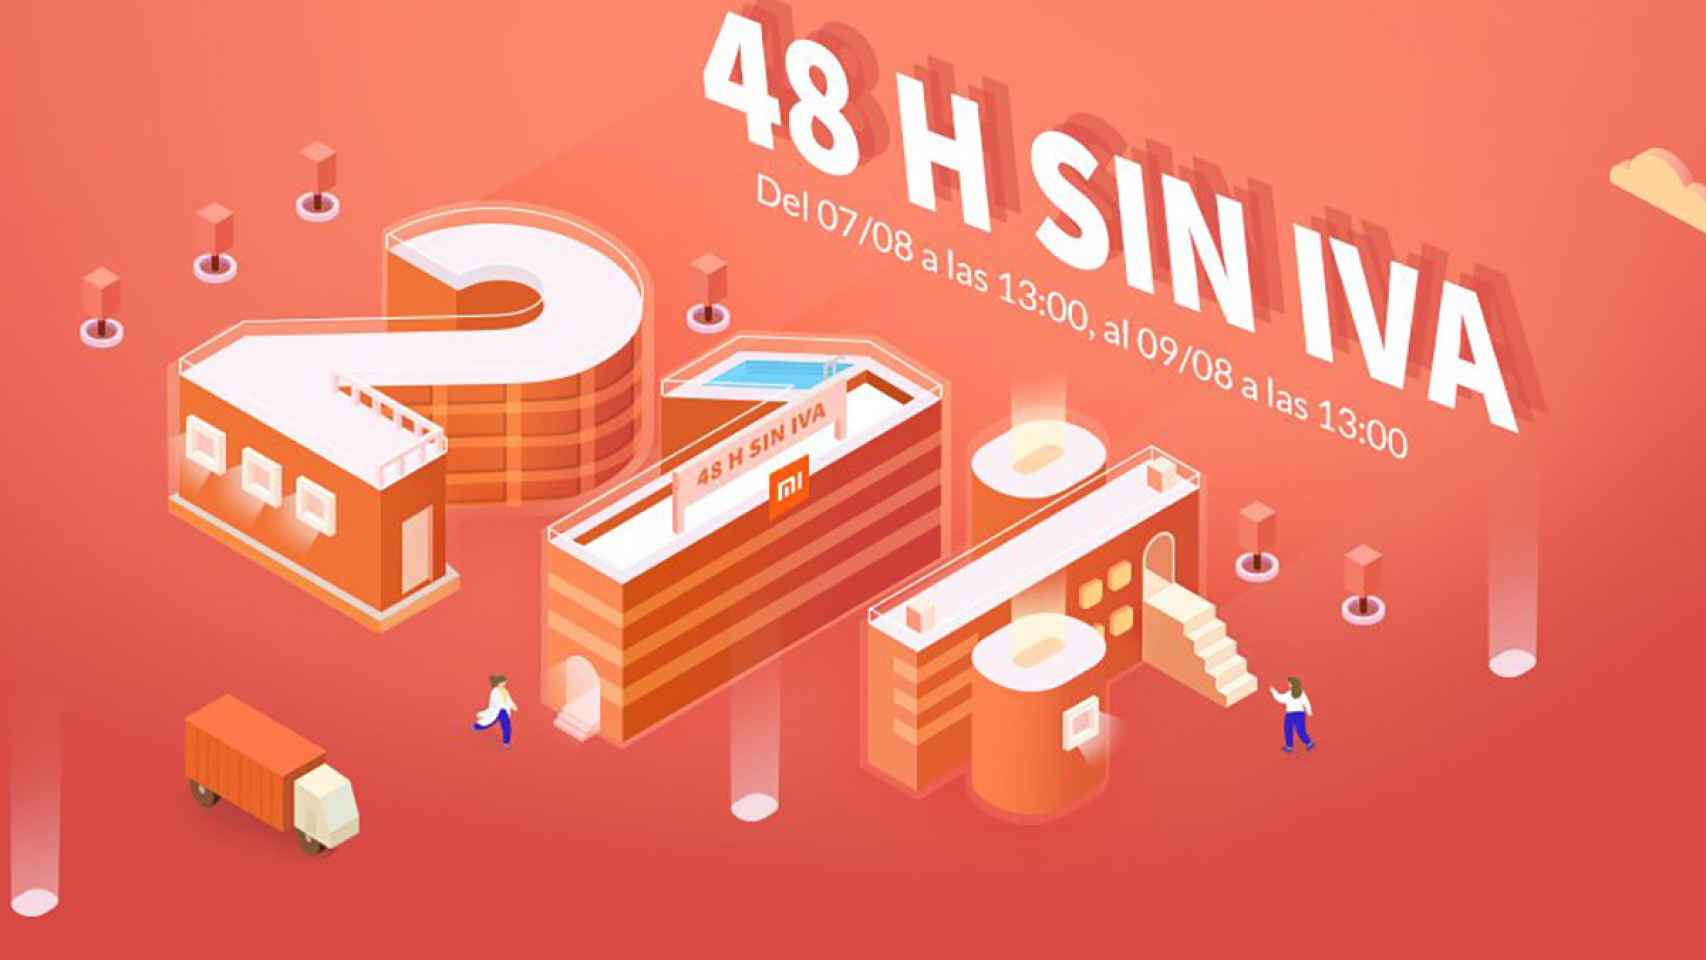 48 horas sin IVA de Xiaomi: Redmi Note 7, Mi 8 Lite, Mi A2 y más